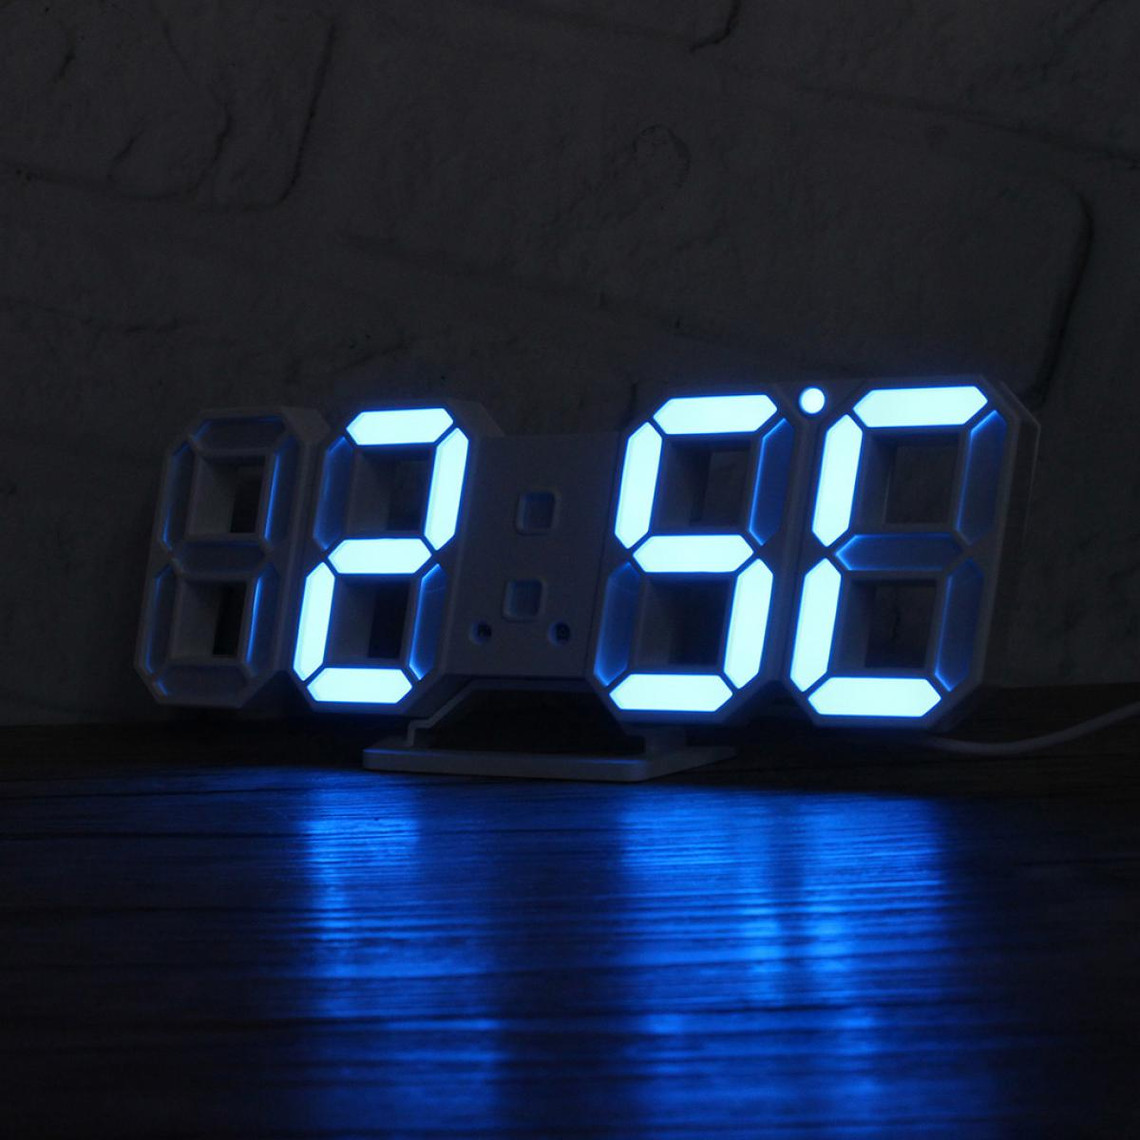 LED Numérique Horloge à Piles Électronique Chambre Alarme Horloges Décor Pièce